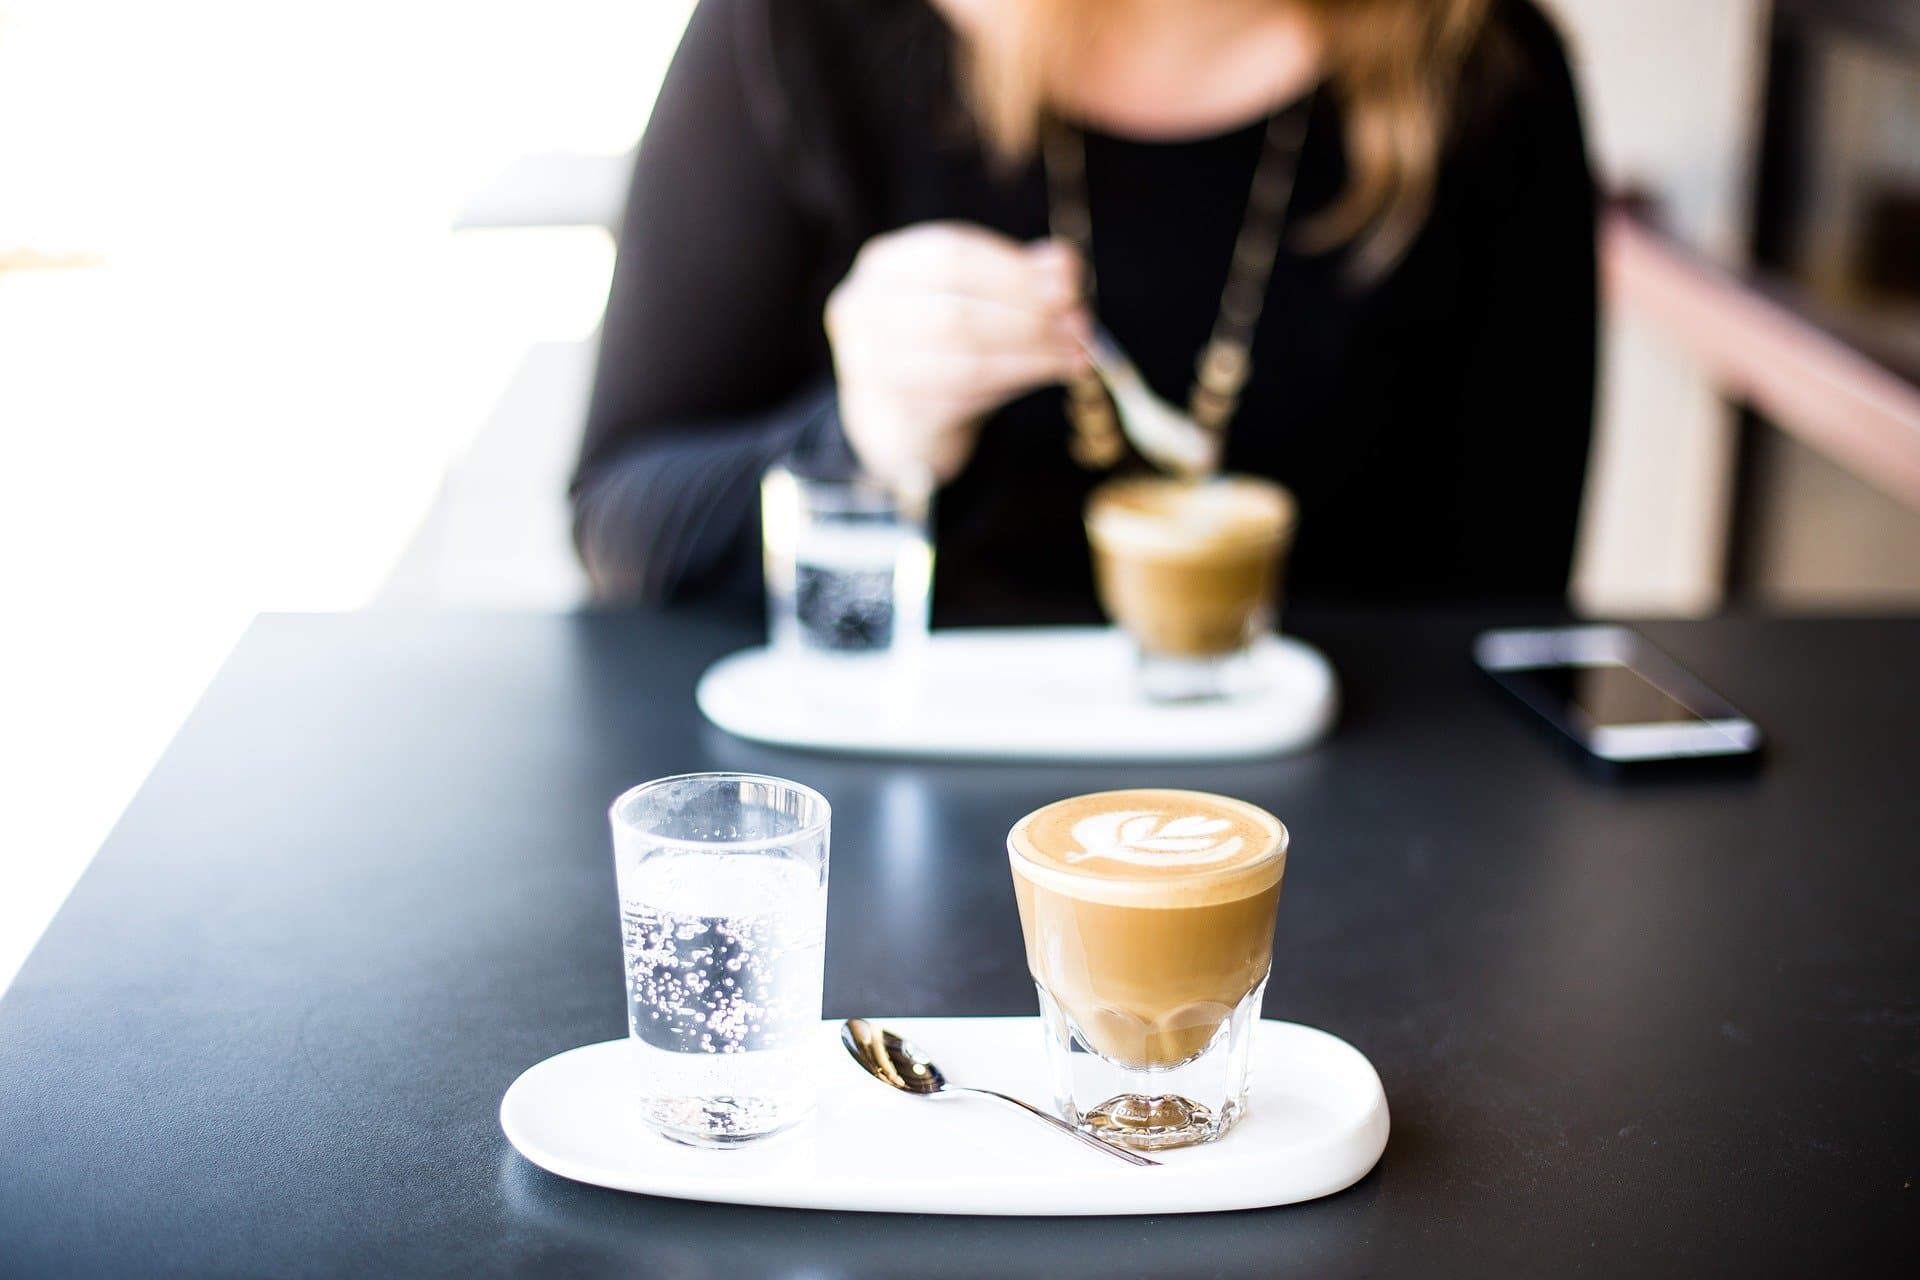 Comment bien tasser son espresso ? - Araku Café de spécialité bio